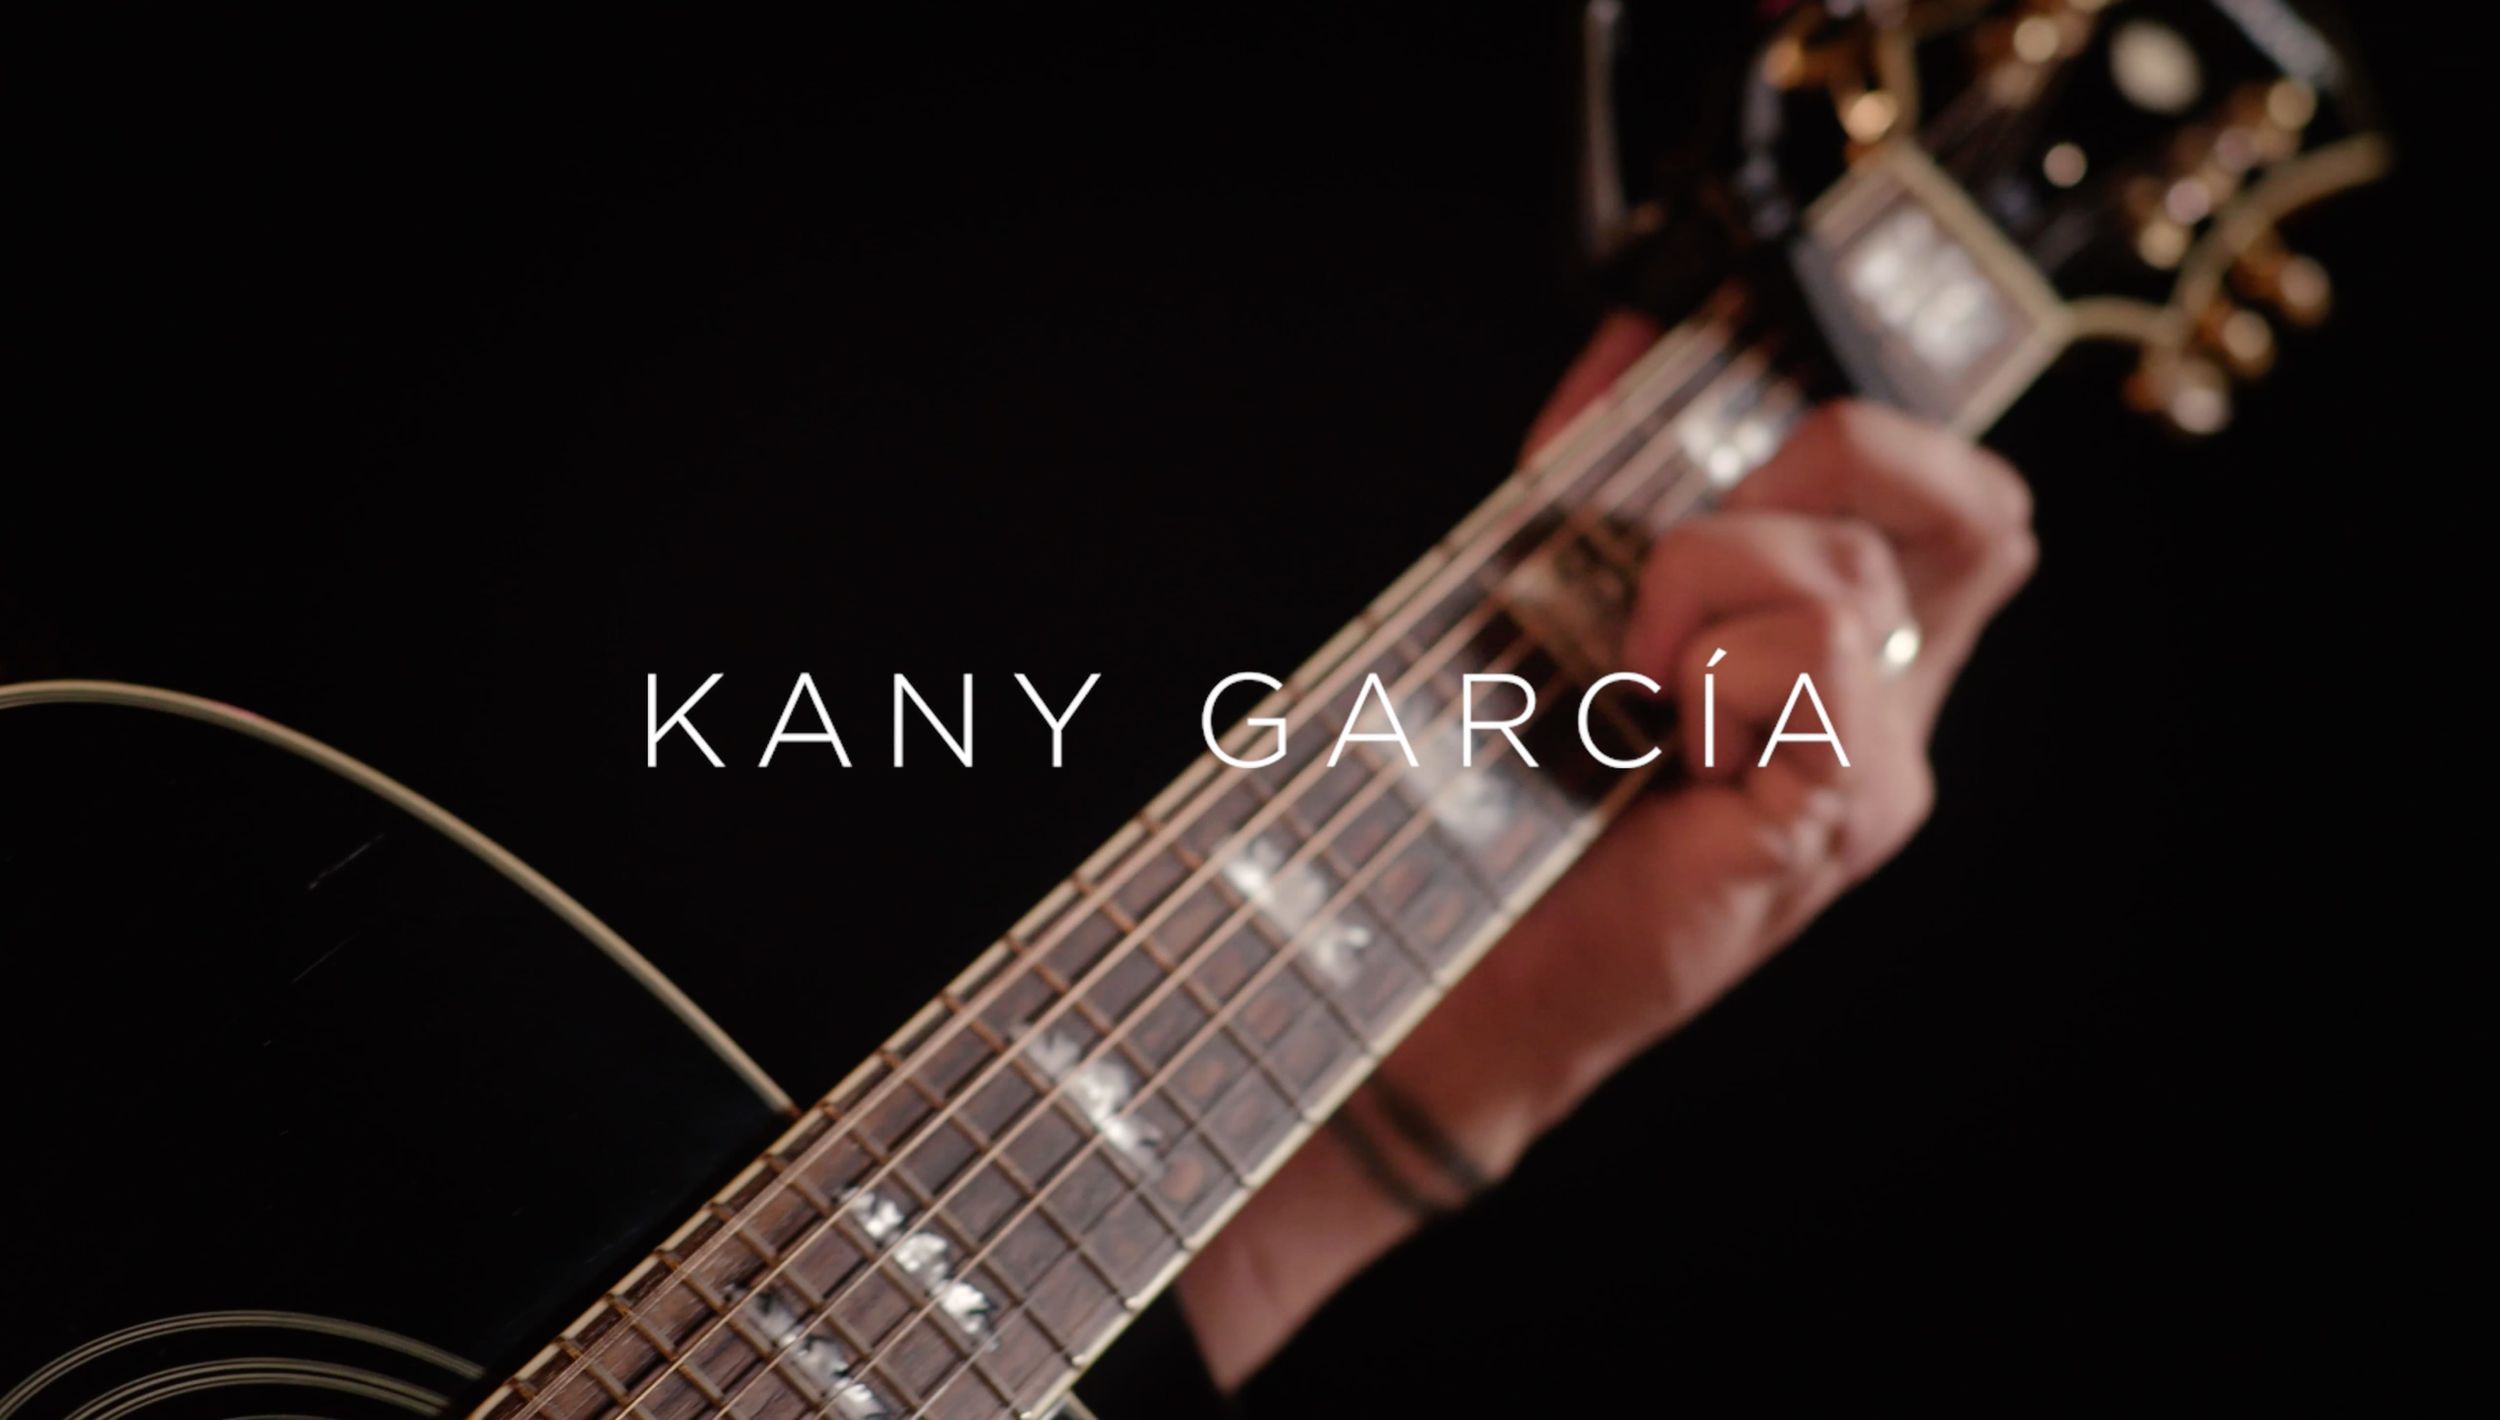 Kany Garcia performt Ihren Song Muero für unsere neue LA Sessions.